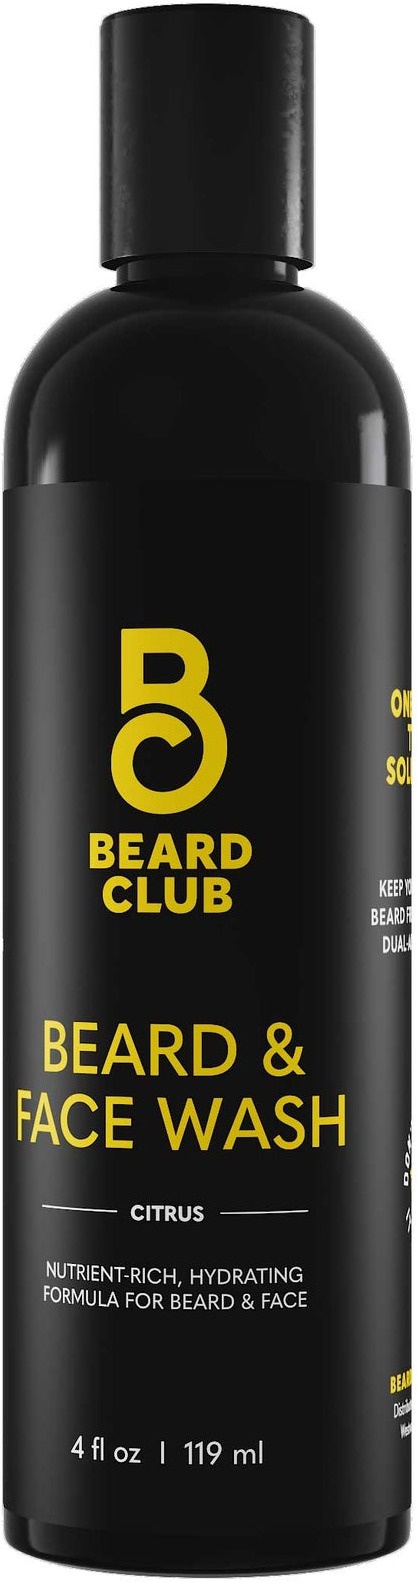 Beard Club Beard & Face Wash